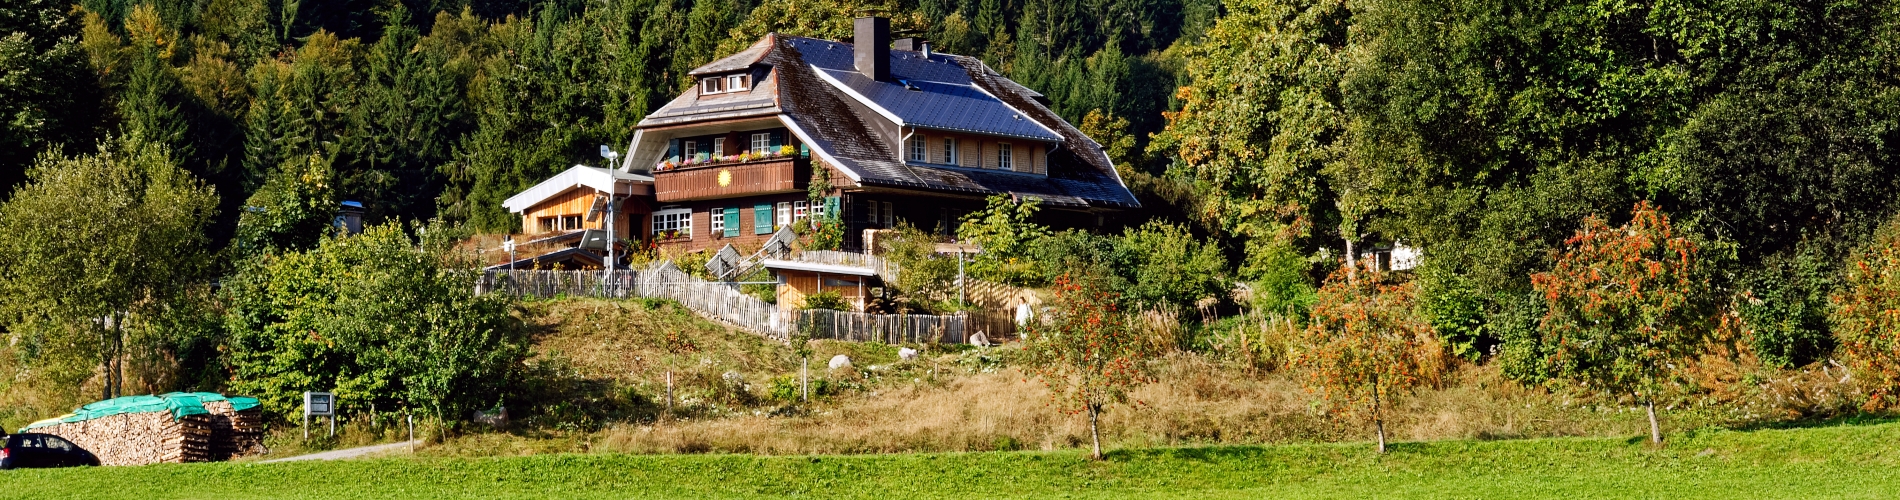 Haus Sonne im Sommer, Foto: Christian Leppert